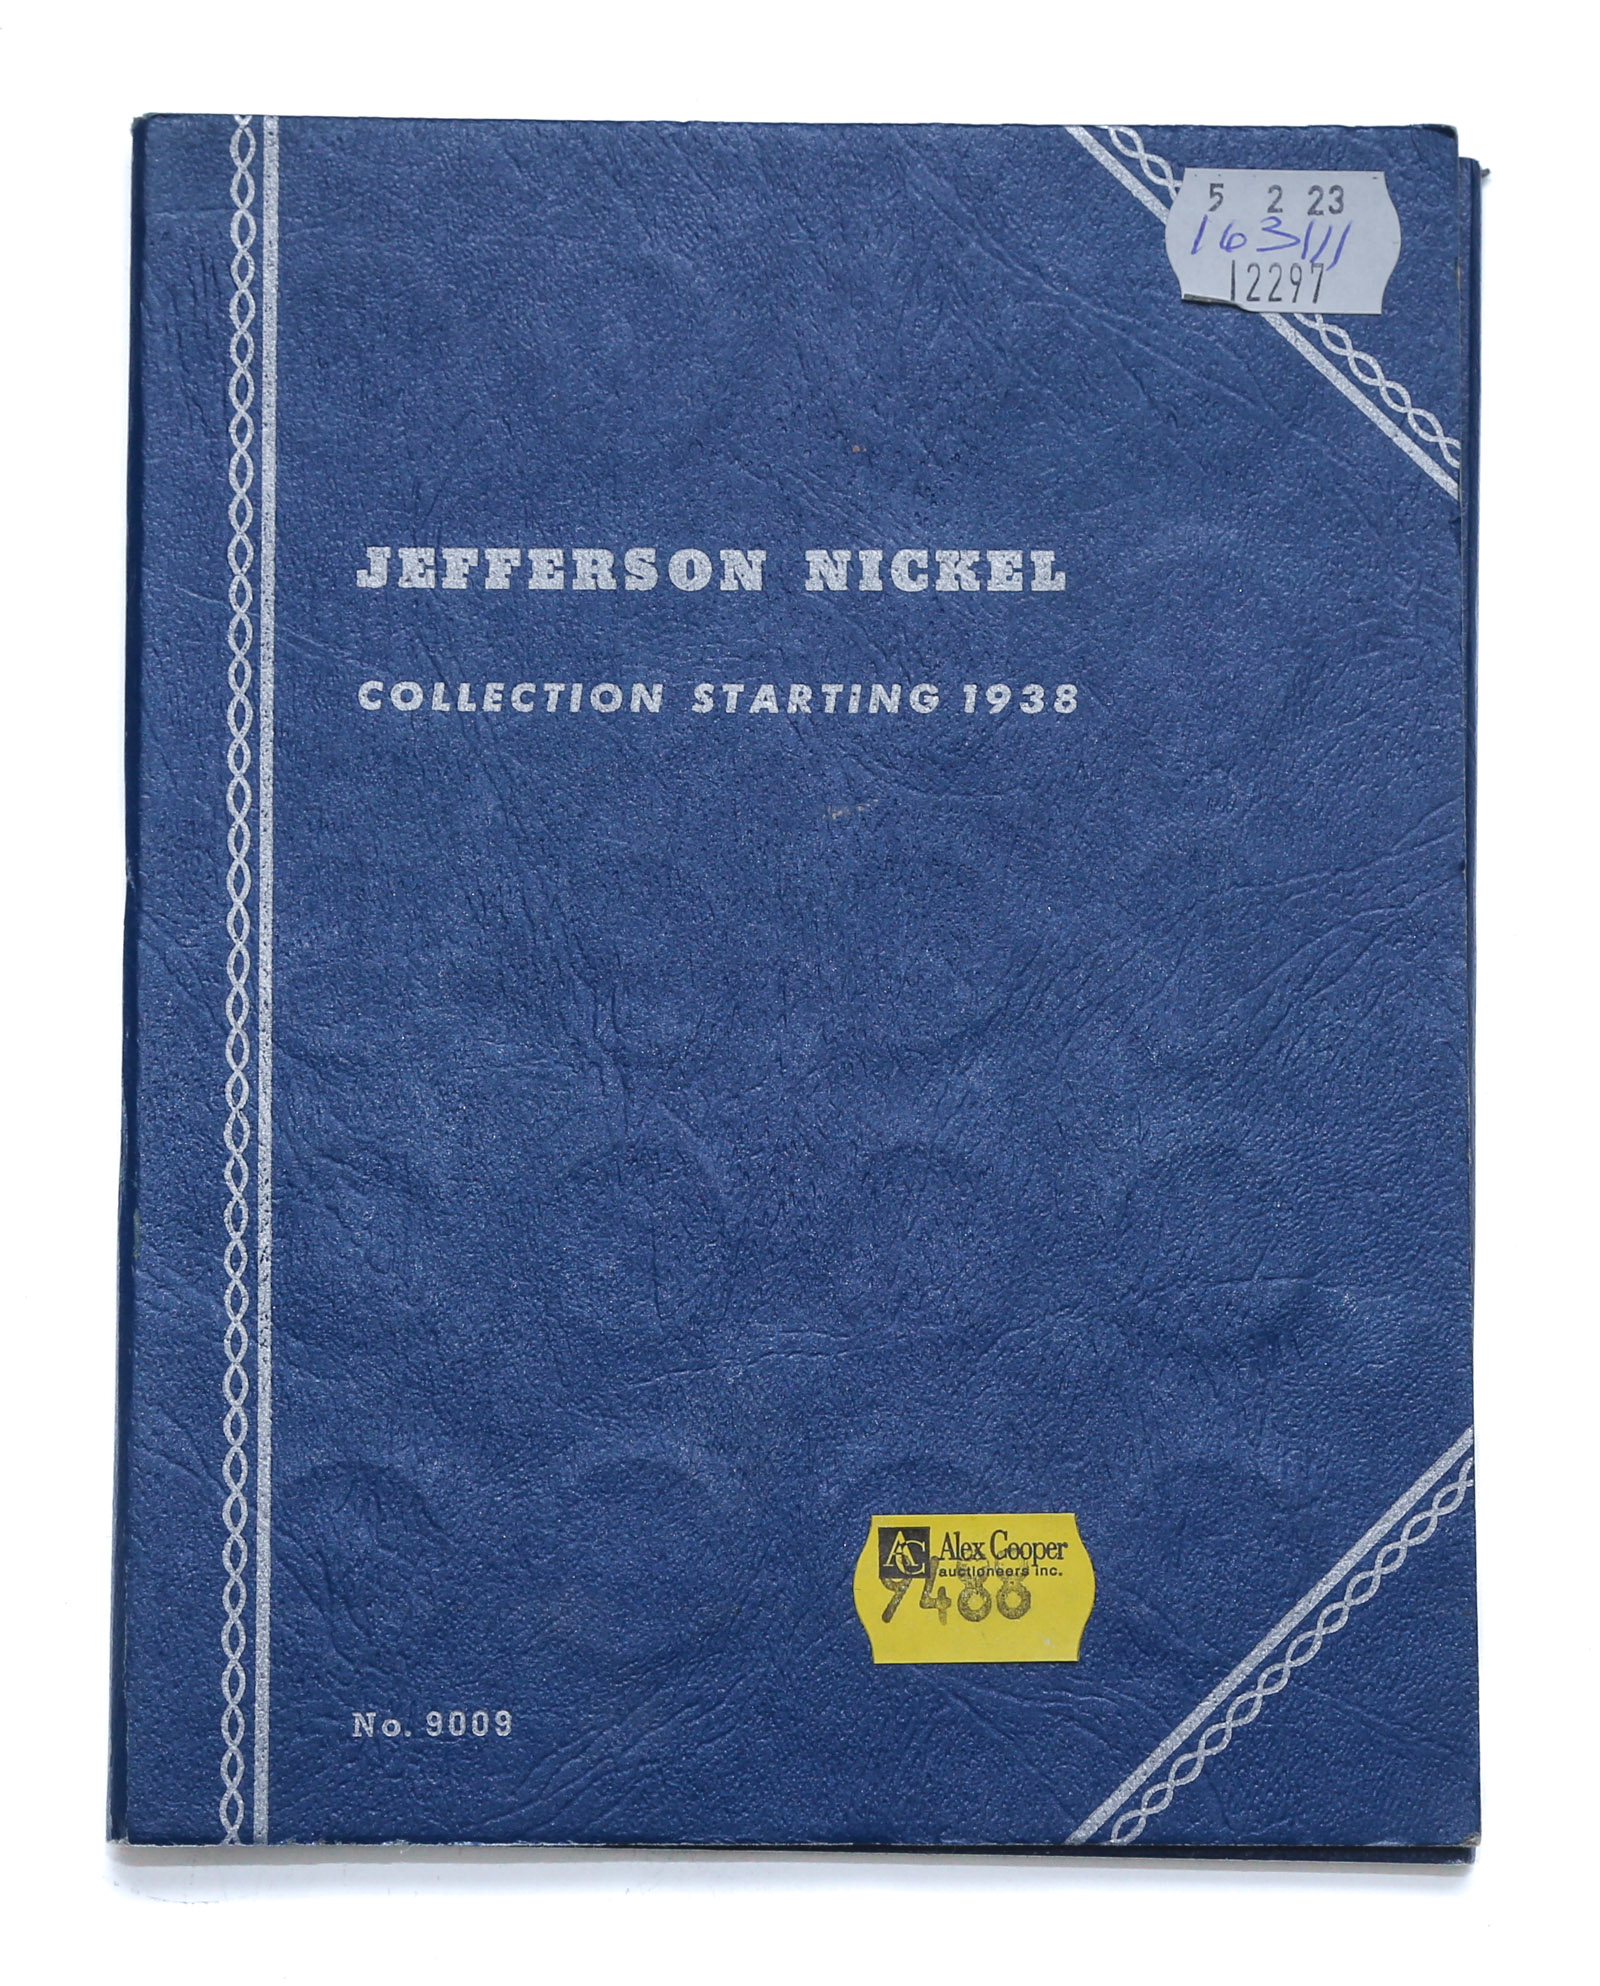 1943 JEFFERSON ALBUM COMPLETE UNTIL 2ea390